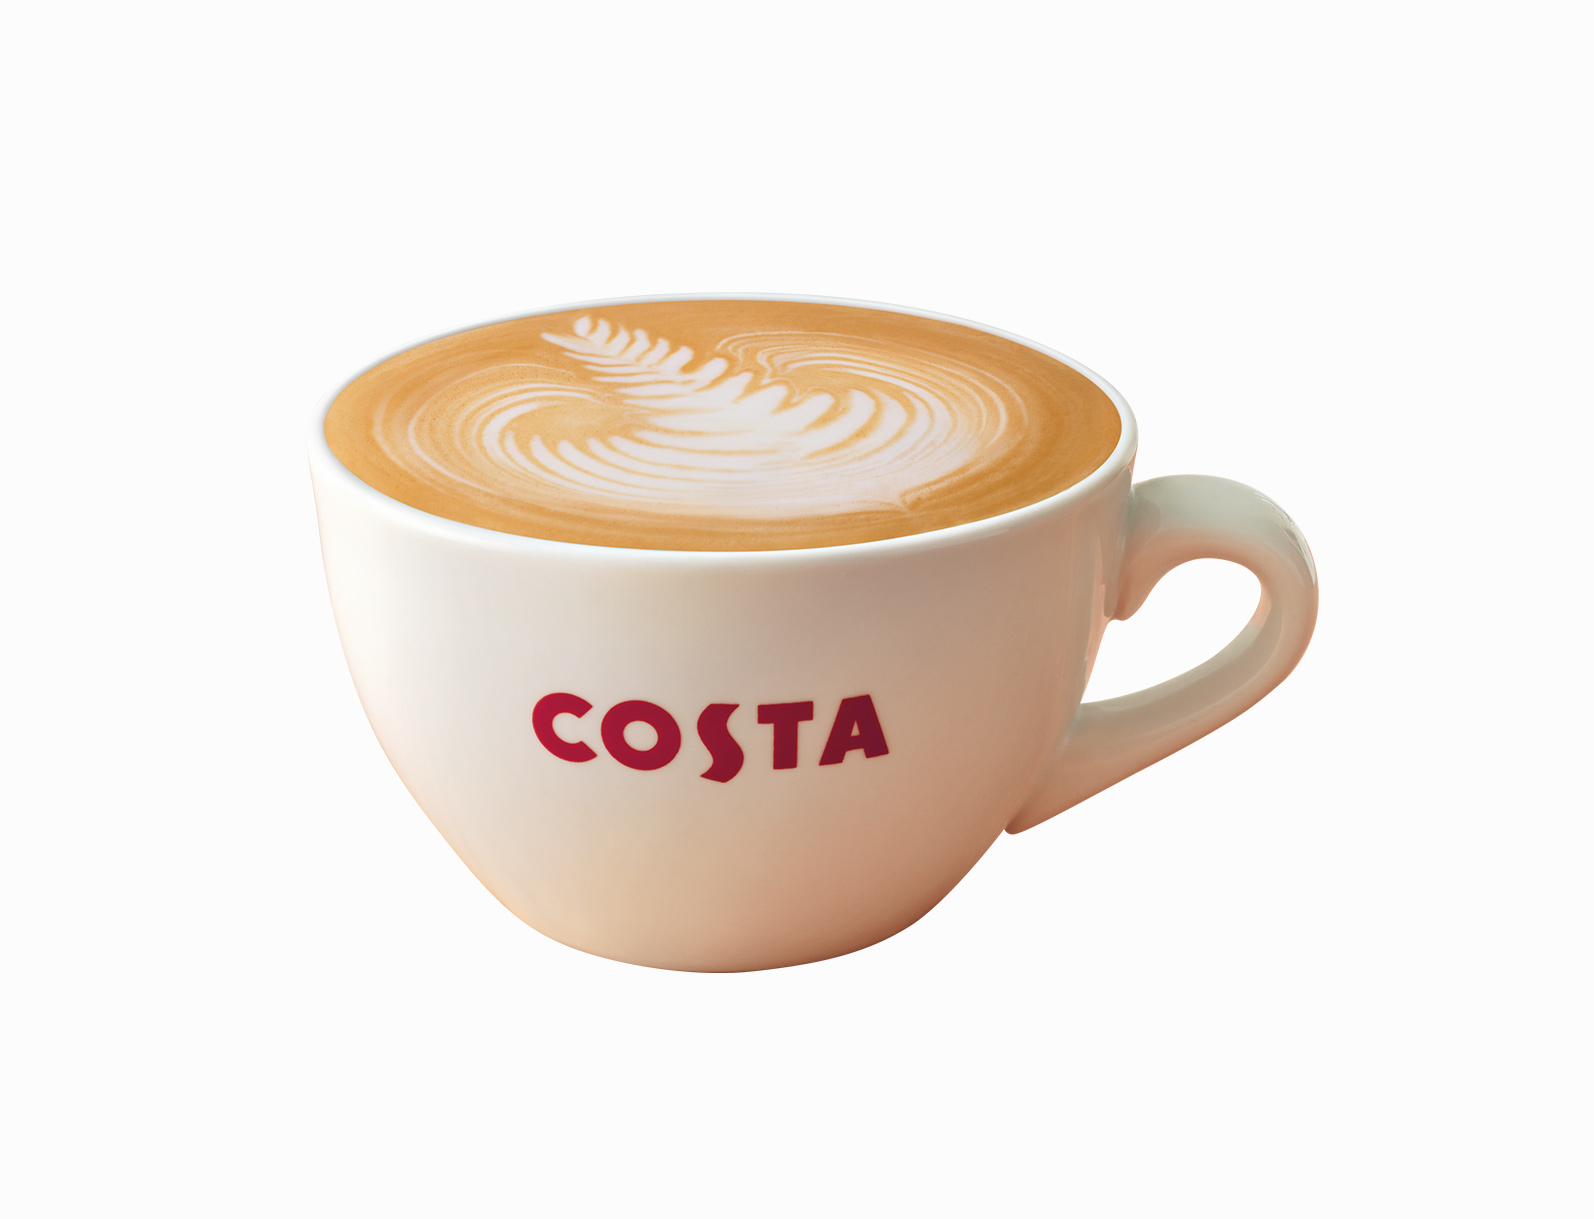 Costa Coffee'de mug veya termos alışverişinde 1 küçük boy kahve hediye.kahve hediye -2